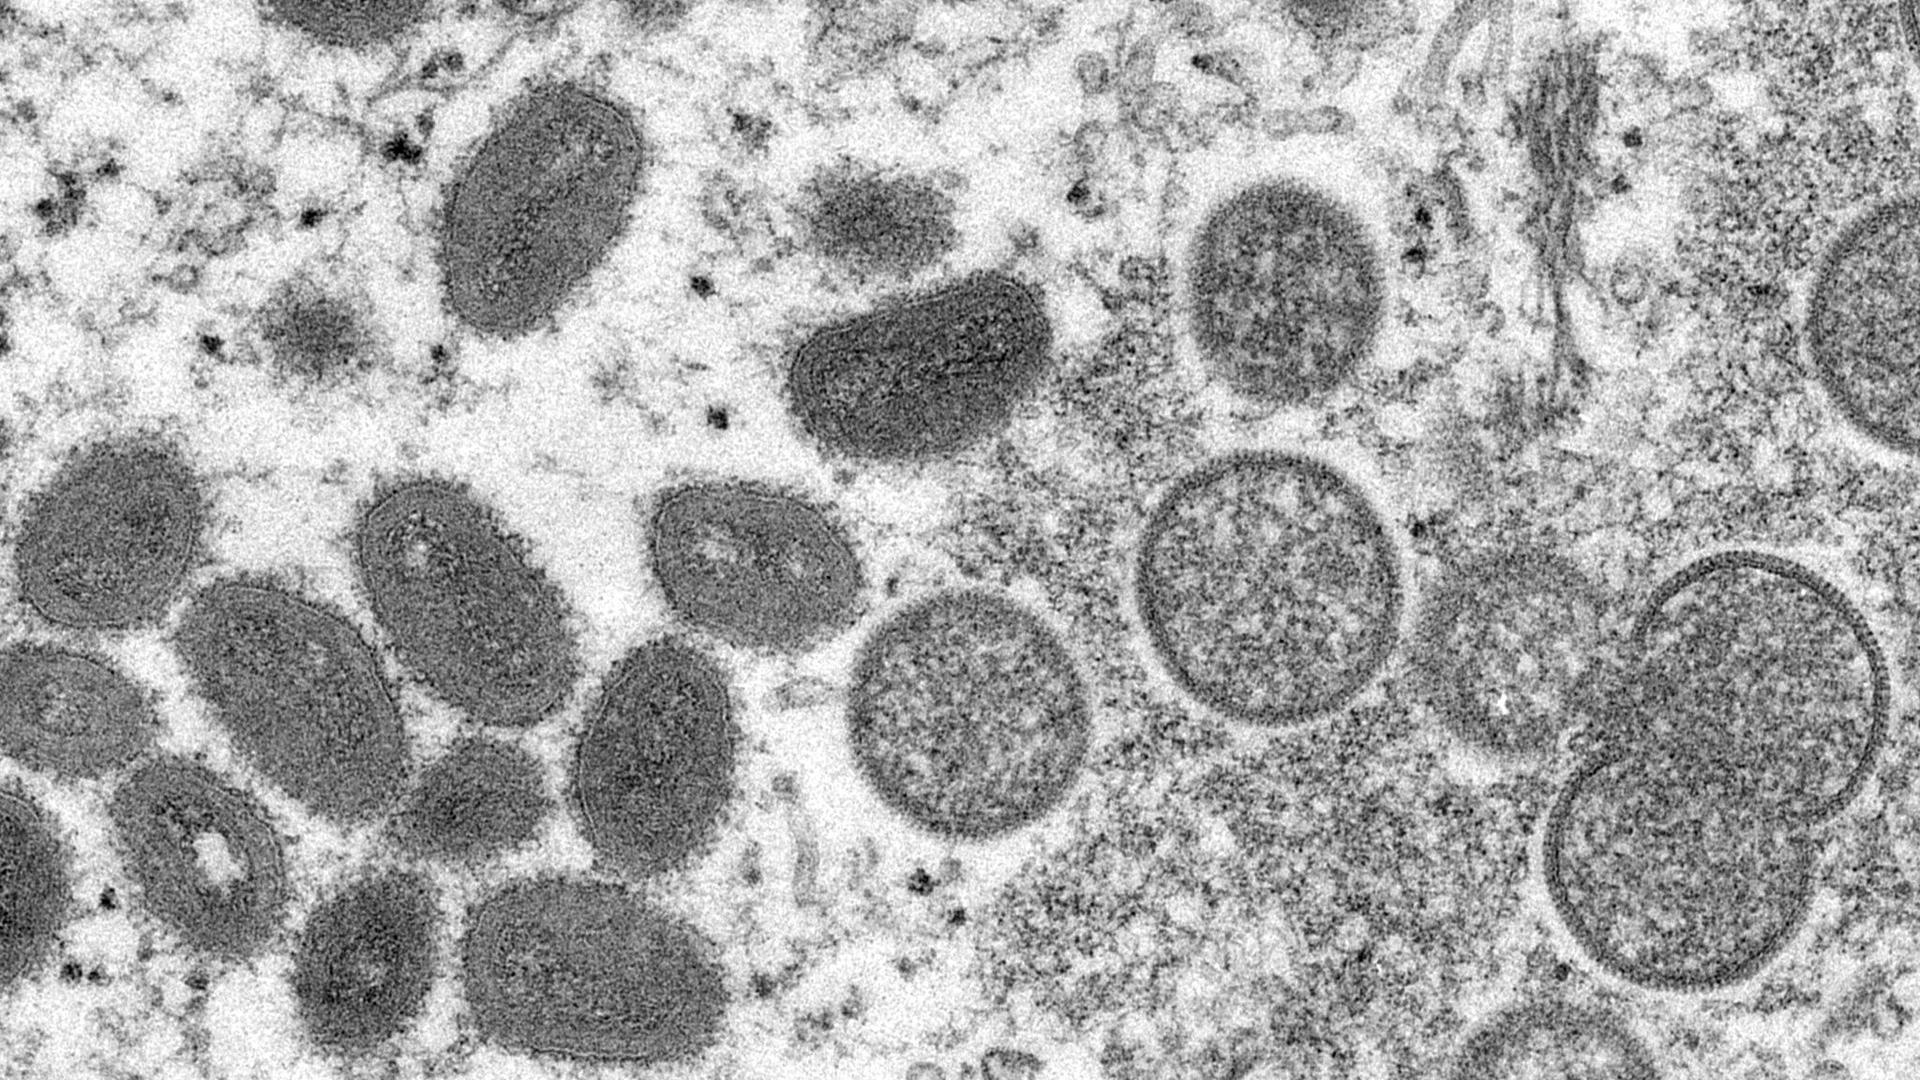 Die elektronenmikroskopische Aufnahme zeigt reife, ovale Affenpockenviren (l) und kugelförmige unreife Virionen (r) einer menschlichen Hautprobe.